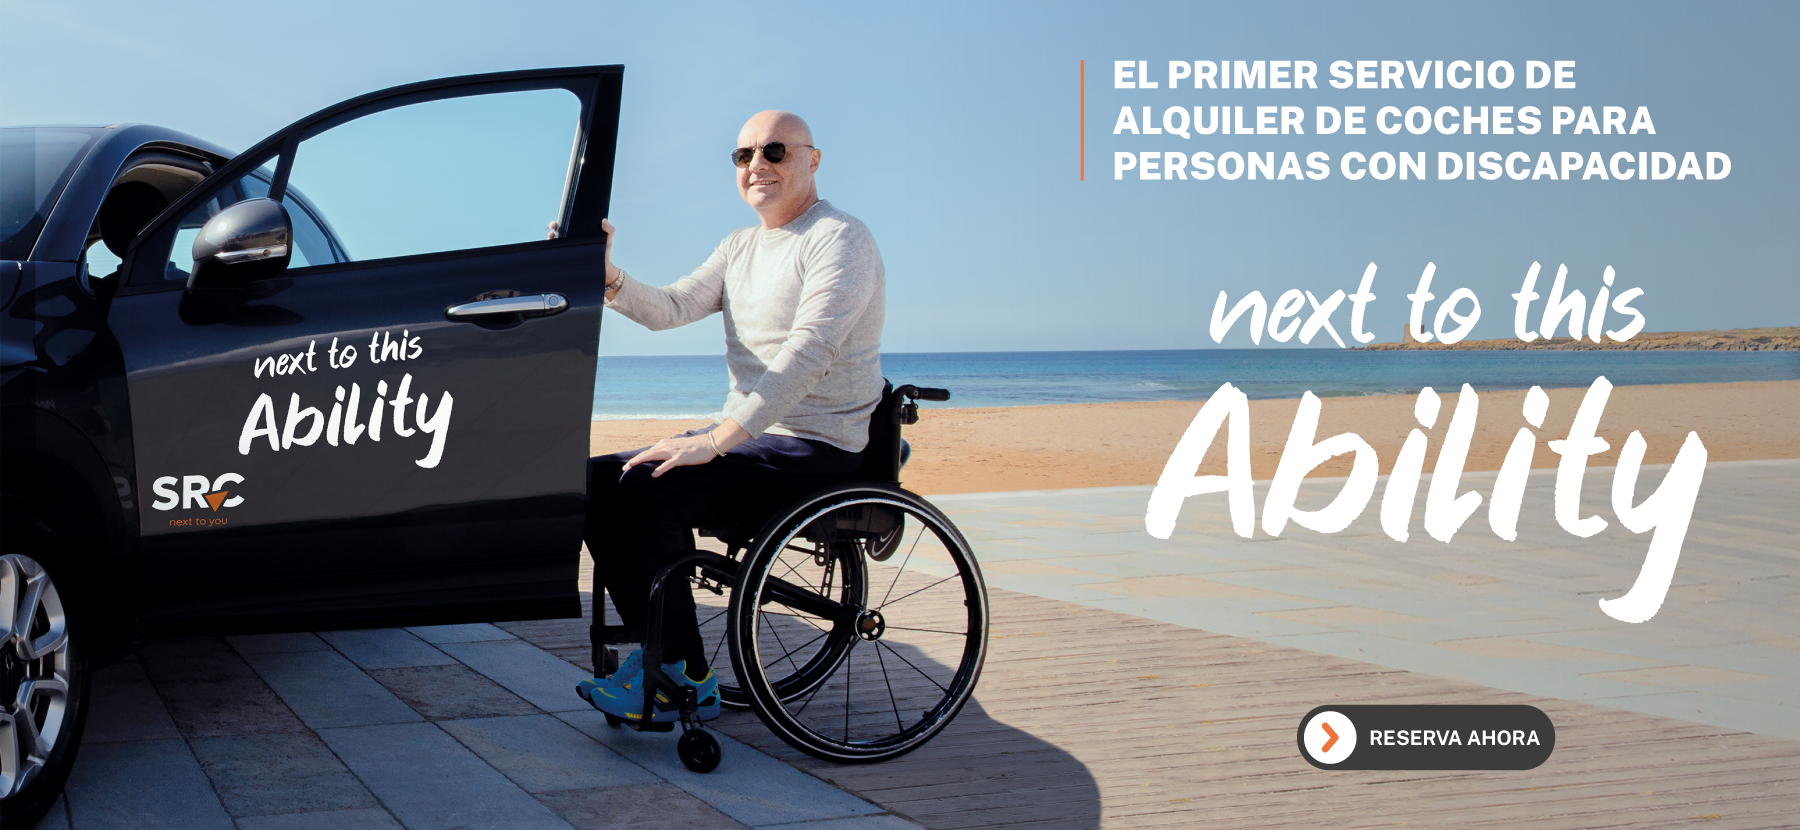 Next to this Ability_el primer servicio de alquiler de coches para personas con discapacidad